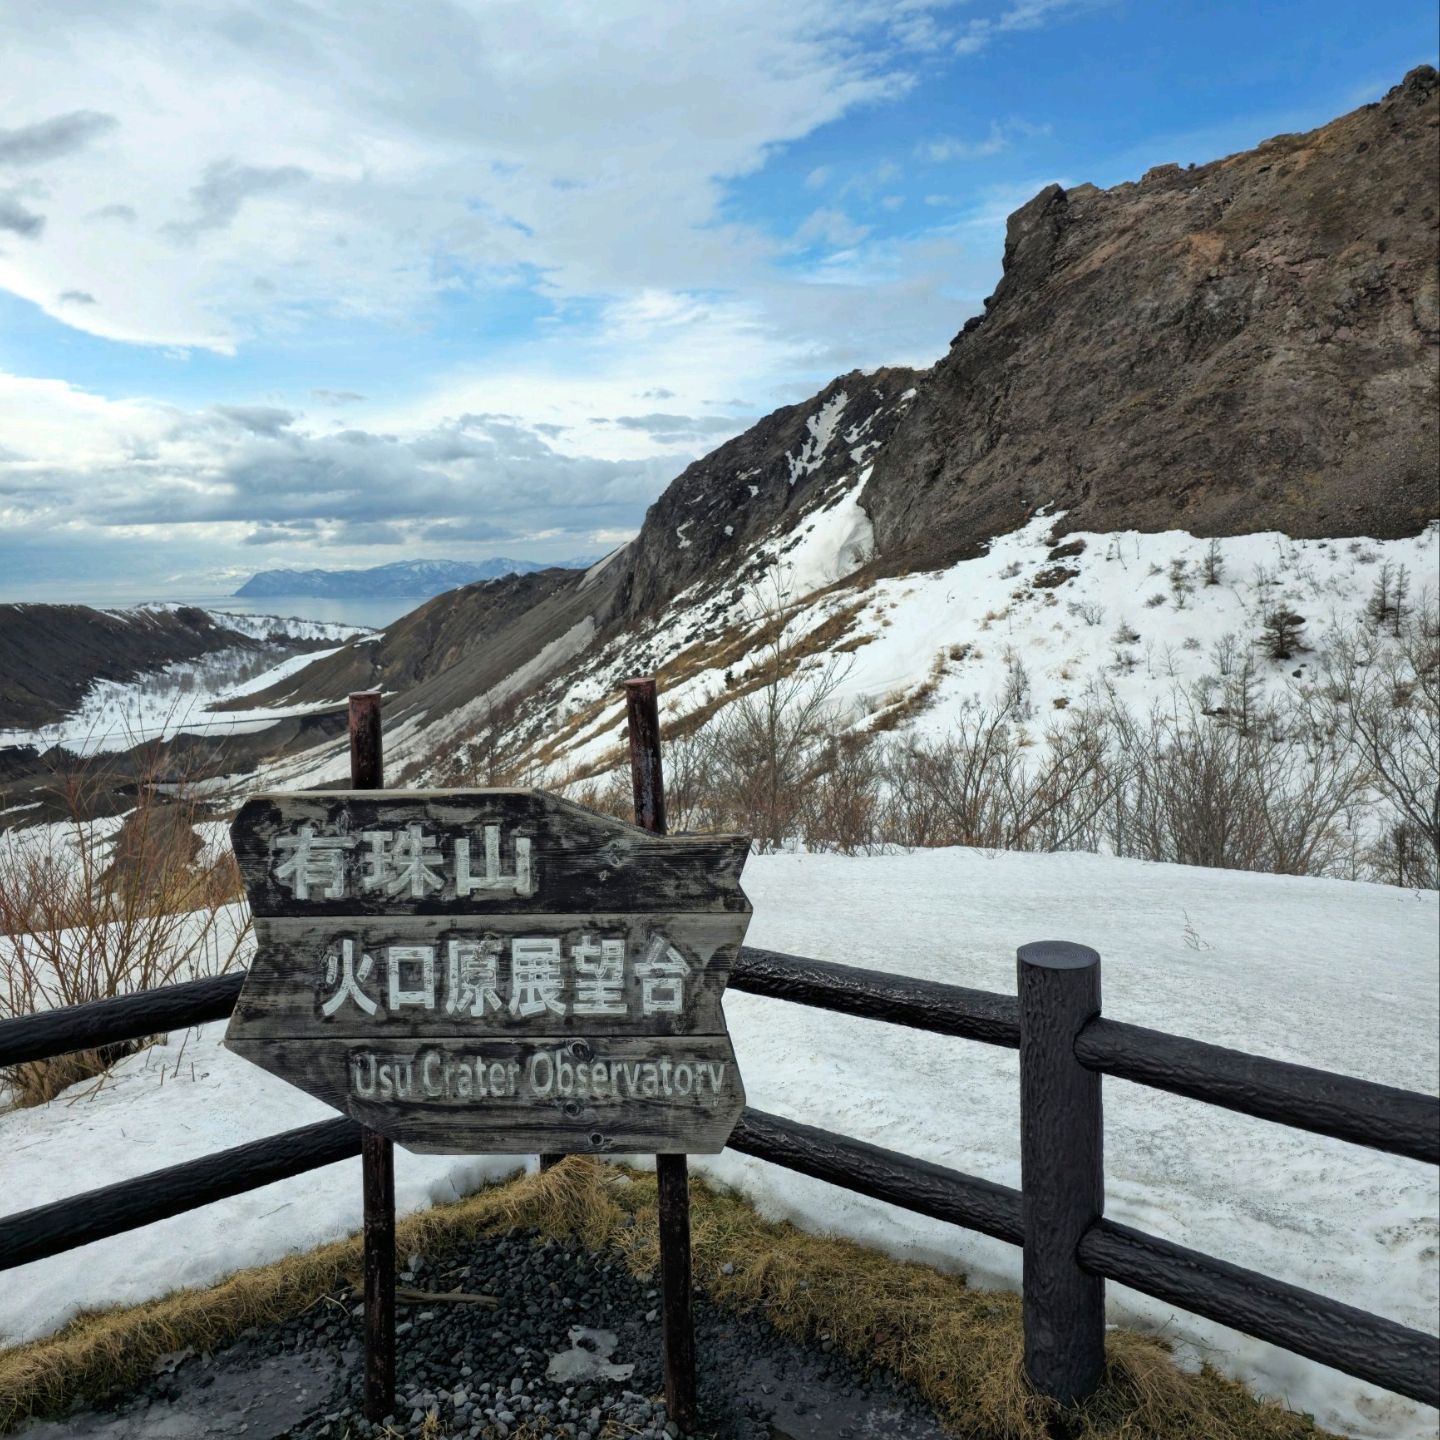 乌斯山火山口观景台,日本旅行的景色非常美